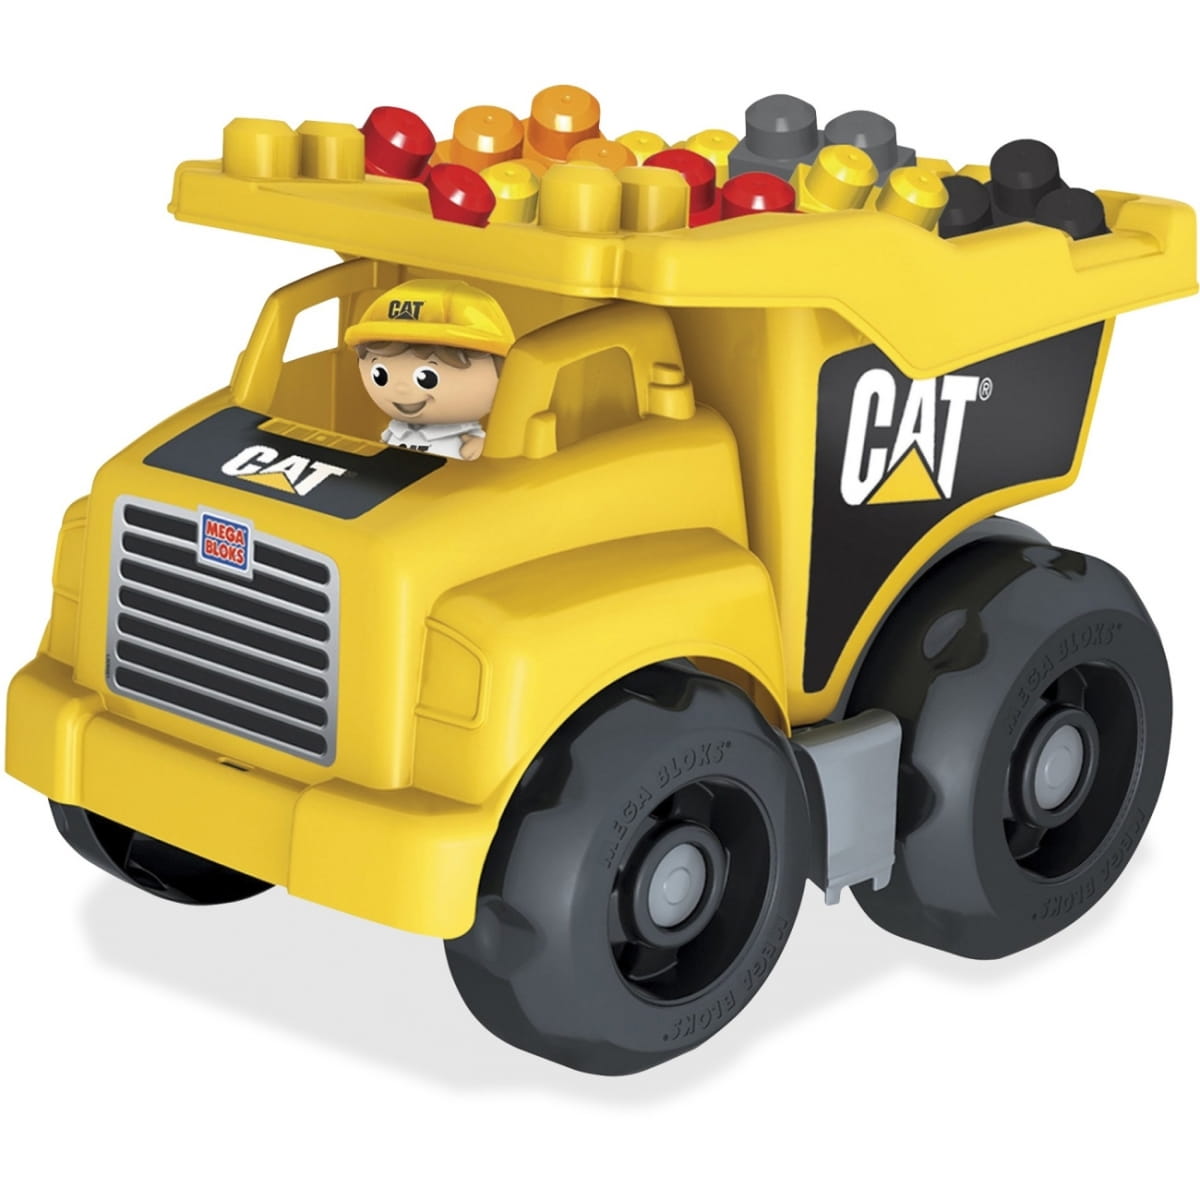    Mega Bloks Cat   (Mattel)